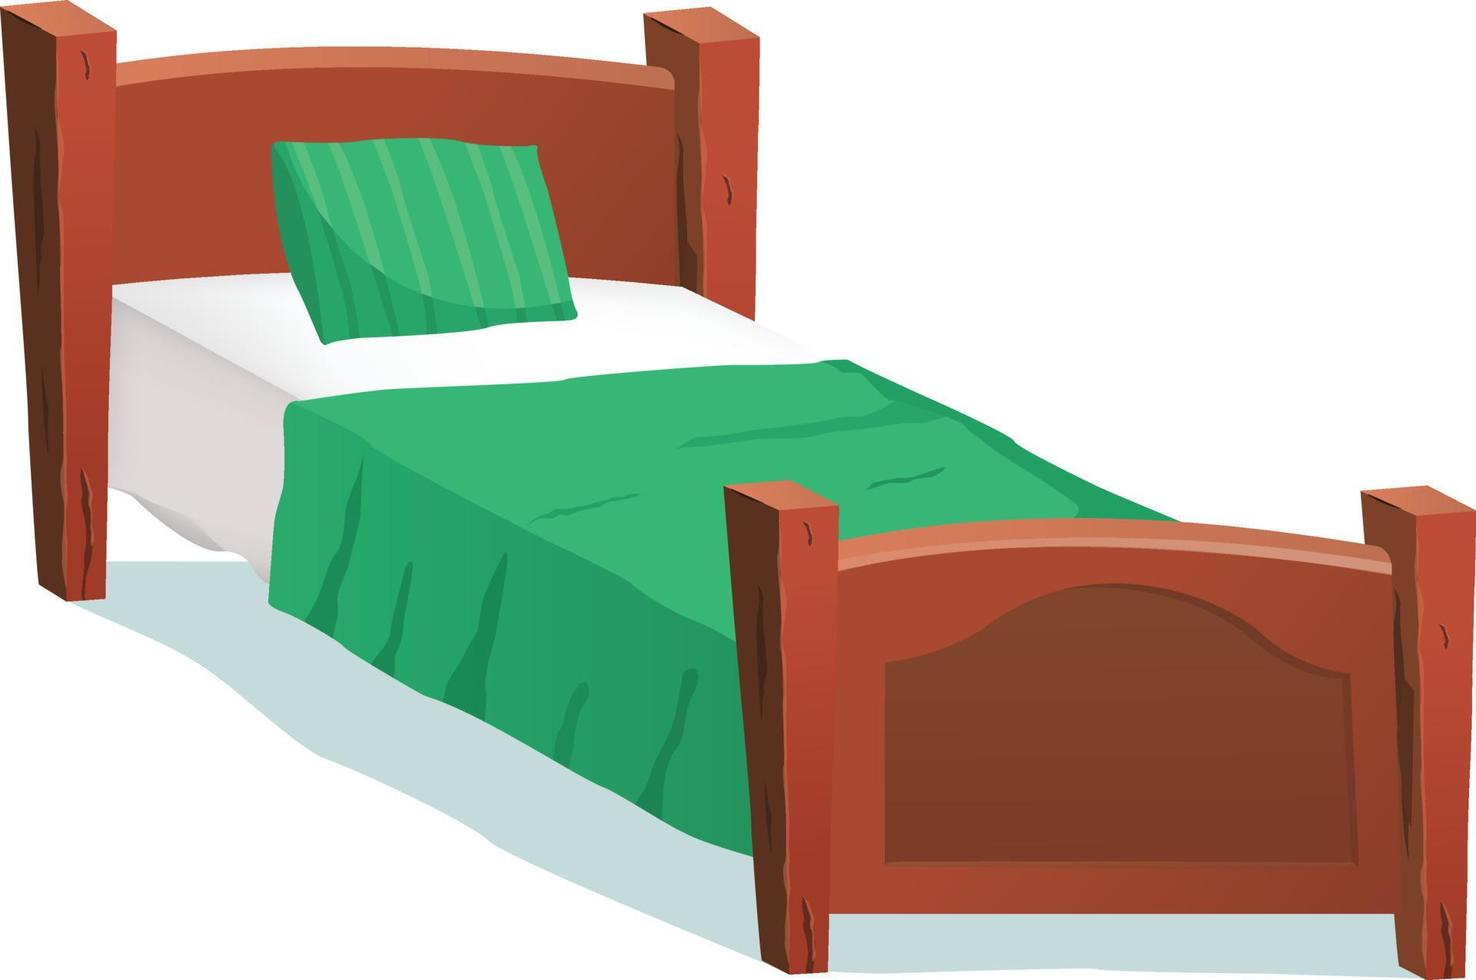 lit en bois dessin animé avec couverture verte illustration d'un lit d'enfant en bois dessin animé pour garçons et filles avec oreillers et couverture verte. vecteur